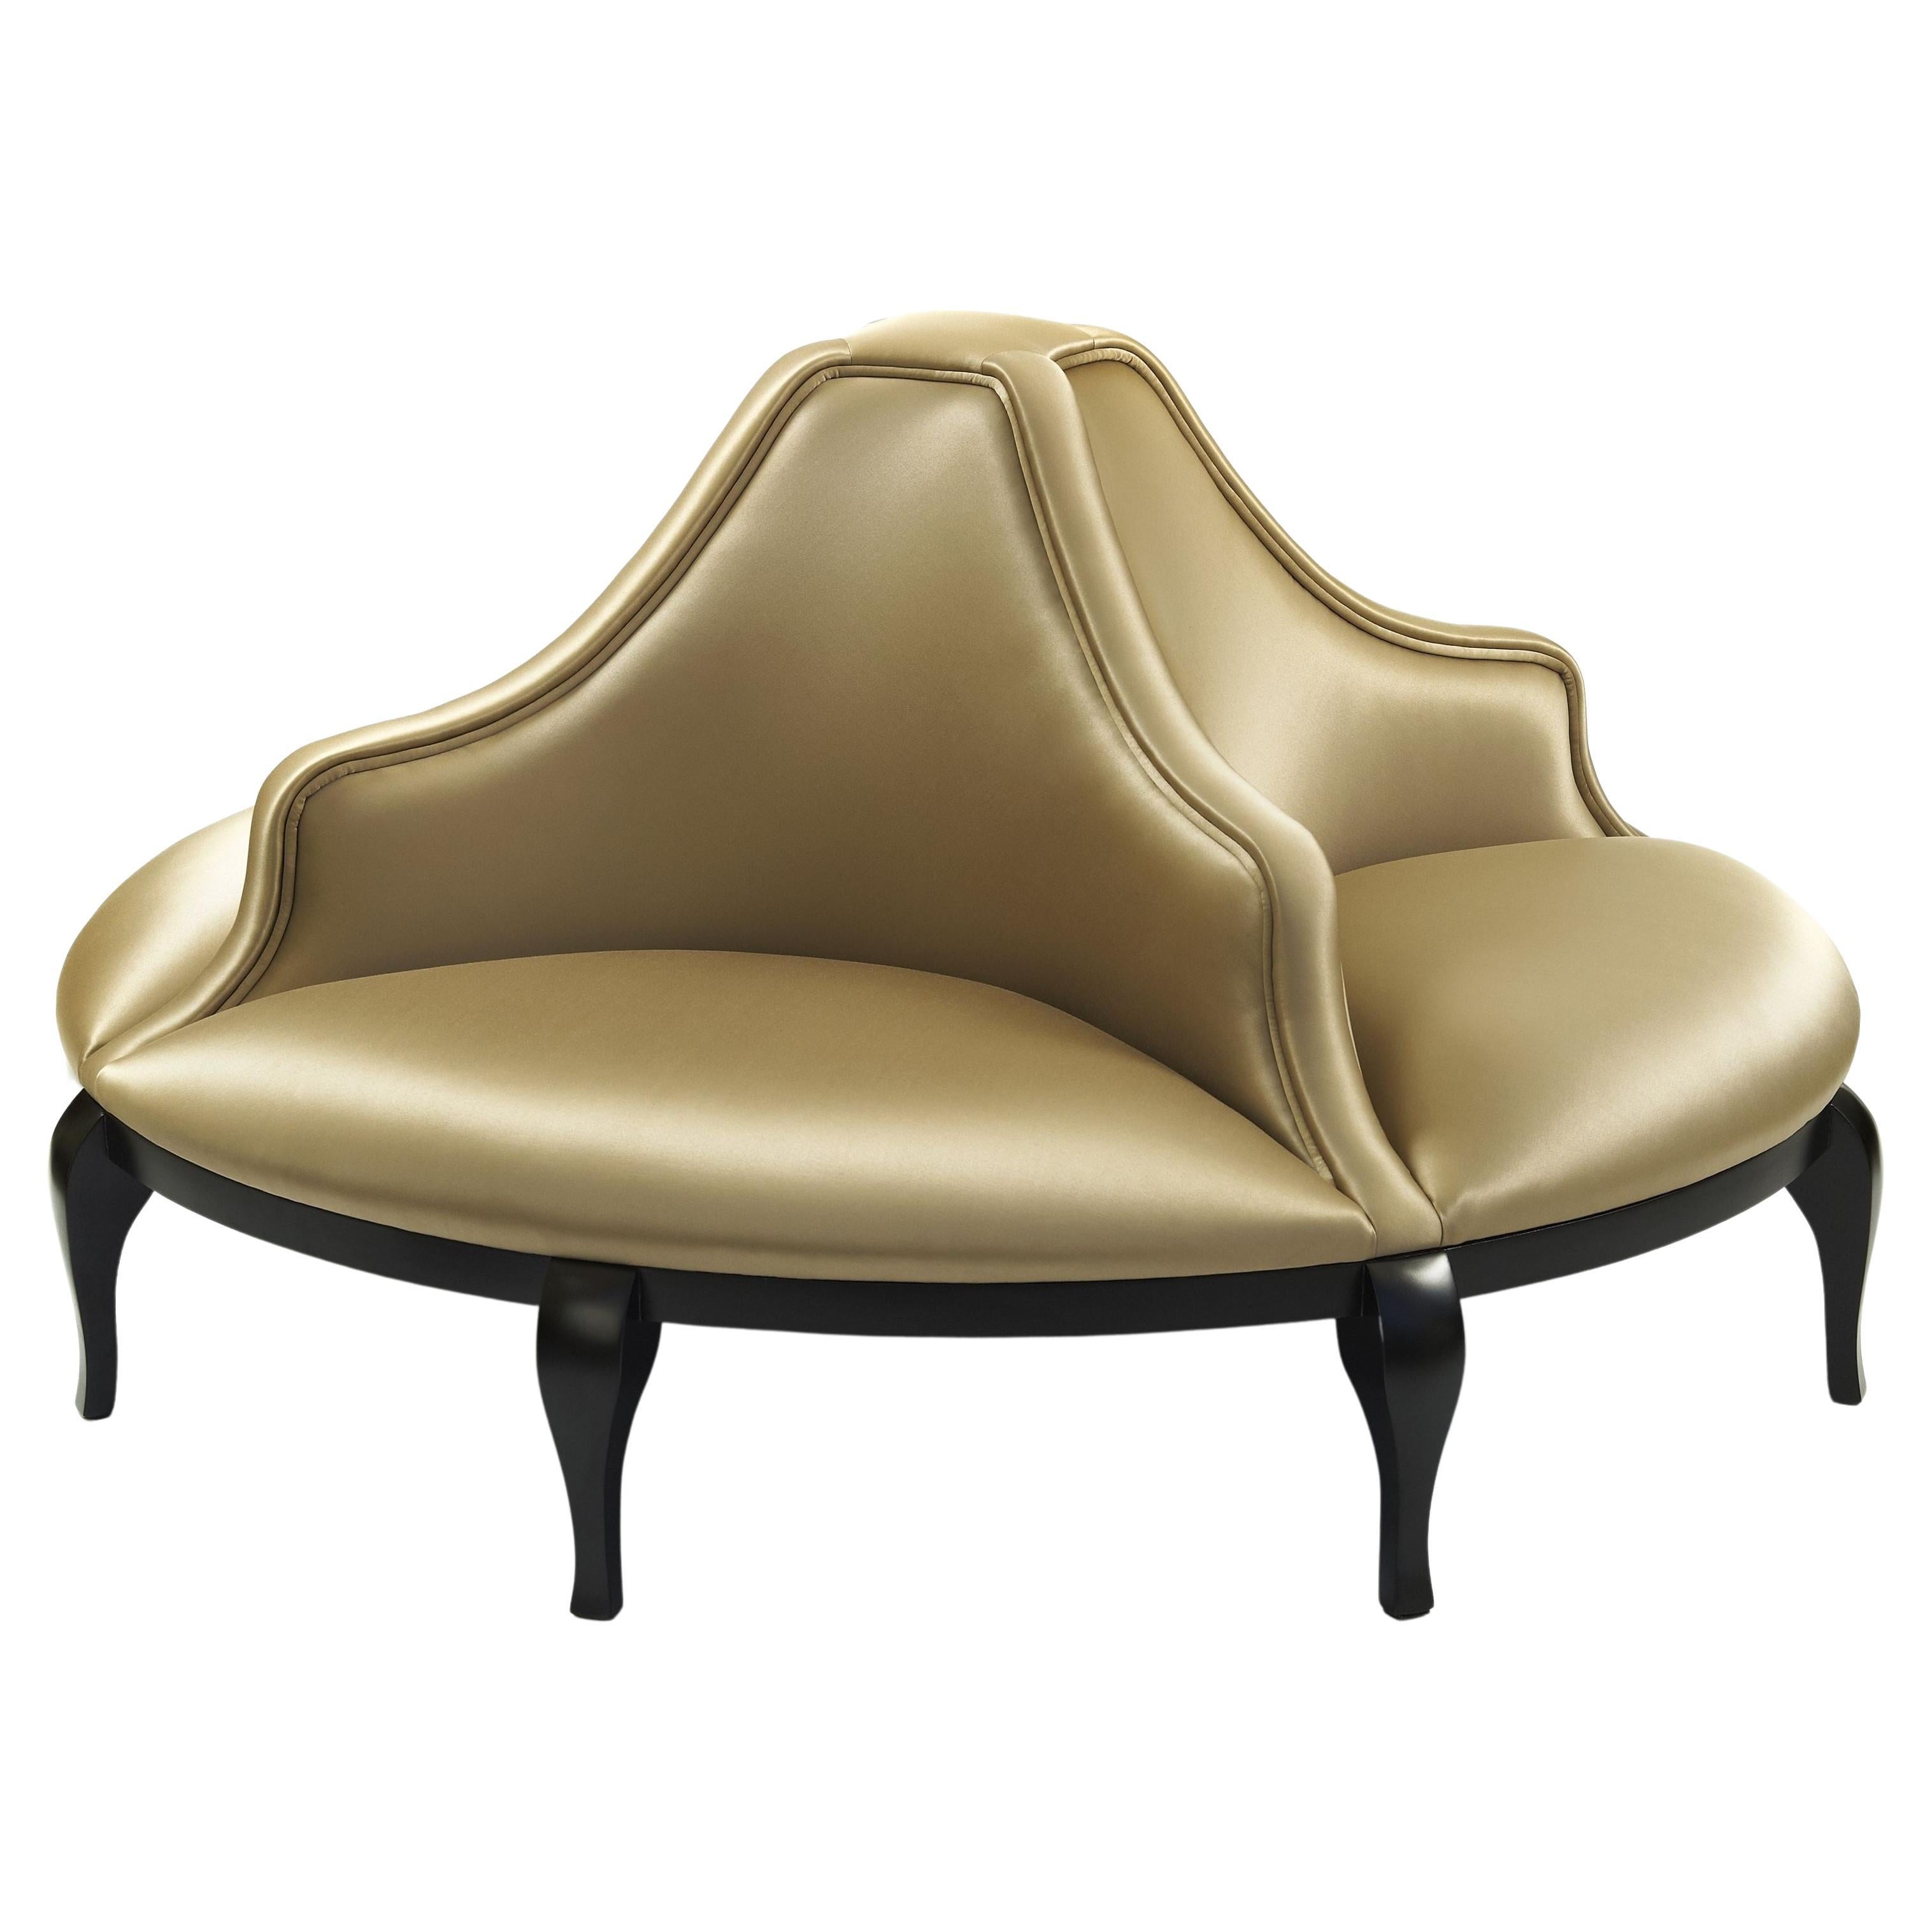 Dieses runde Sofa ist eine wiederentdeckte Ikone aus dem viktorianischen Zeitalter. Hell, leicht und feminin - dieses opulente Signature-Piece ist die perfekte Kulisse für eine Flirtszene aus einem beliebigen Klassiker der britischen Literatur. Es